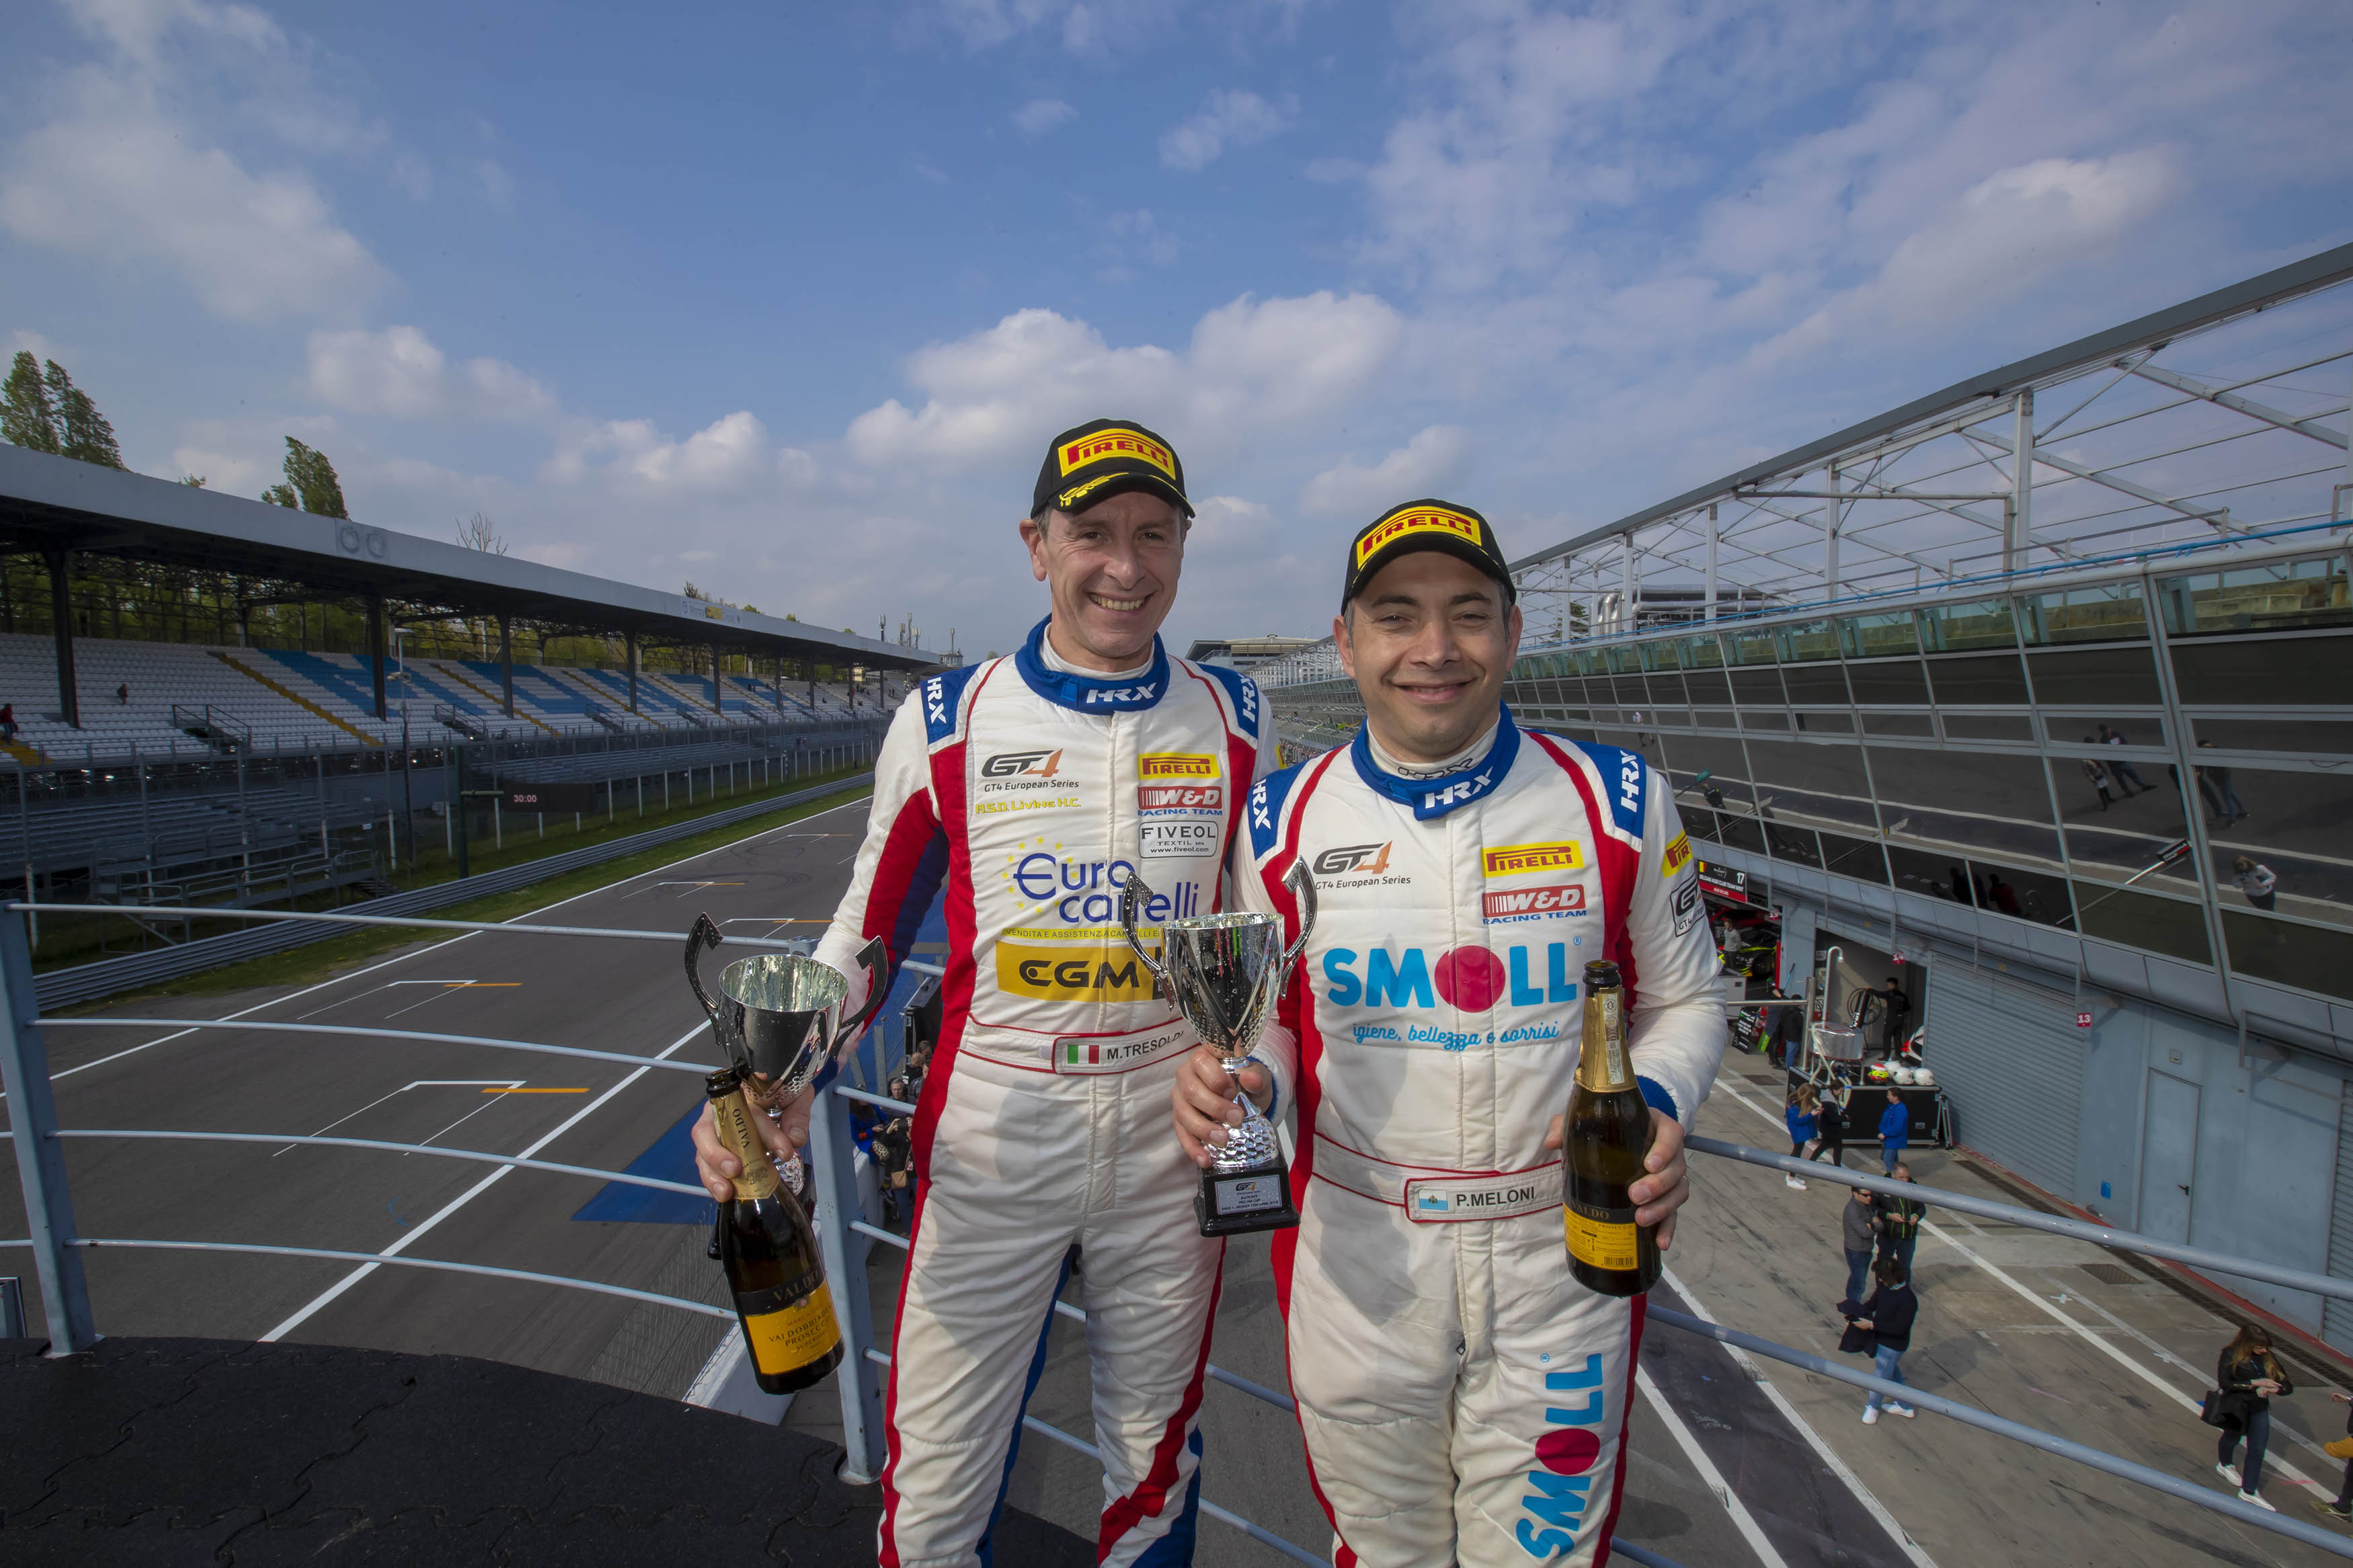 Paolo Meloni e Max Tresoldi sono stati protagonisti nella GT4 European Series